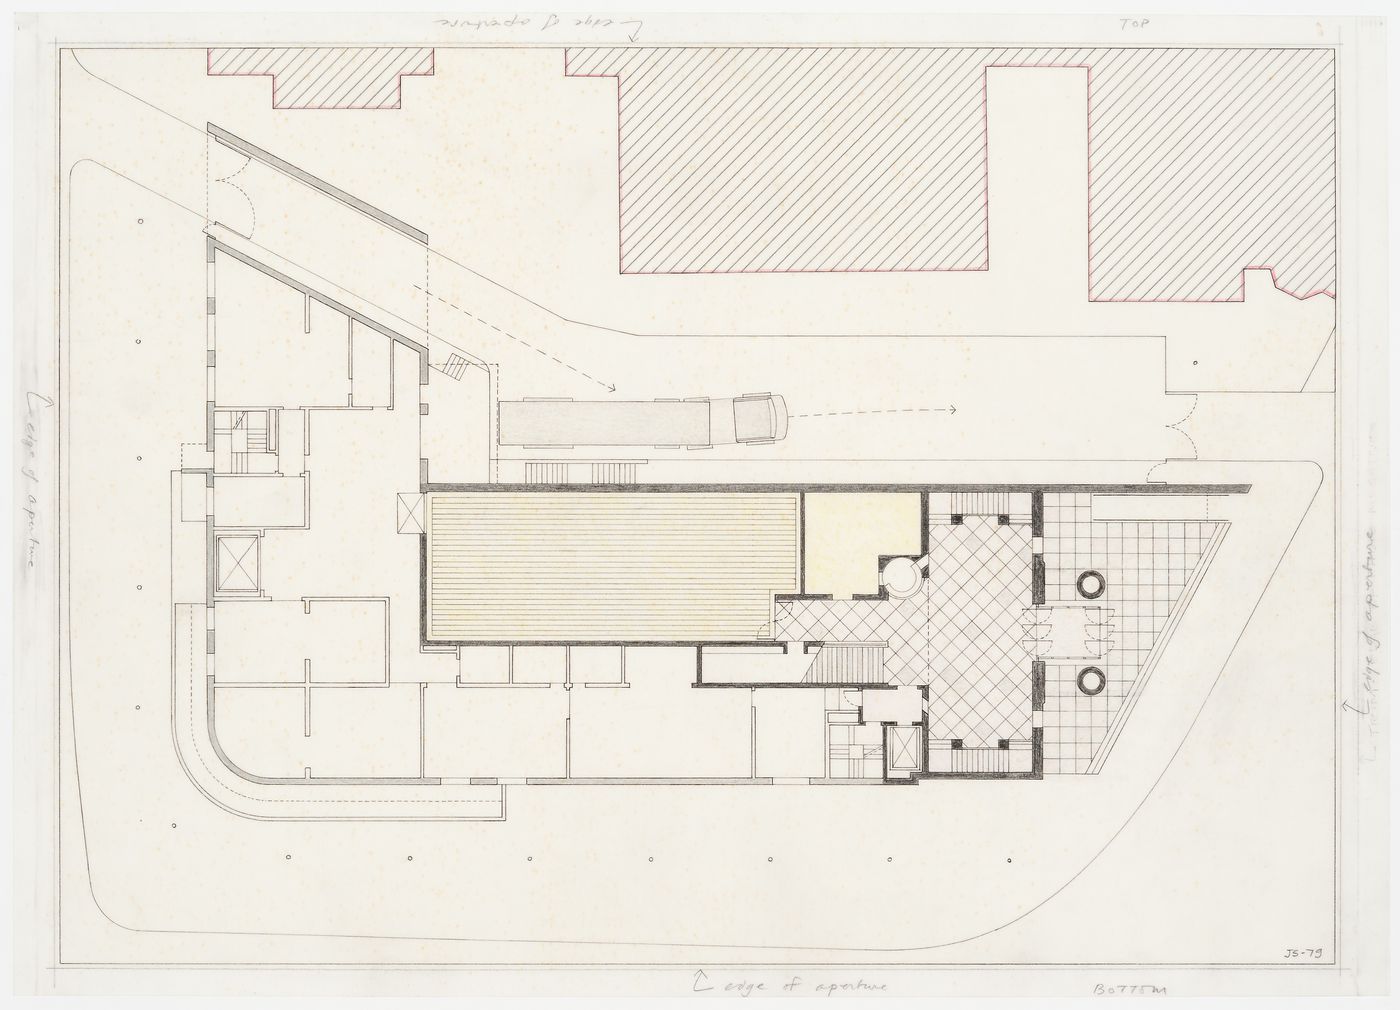 Arthur M. Sackler Museum, Harvard University, Cambridge, Massachusetts: floor plan for entrance level